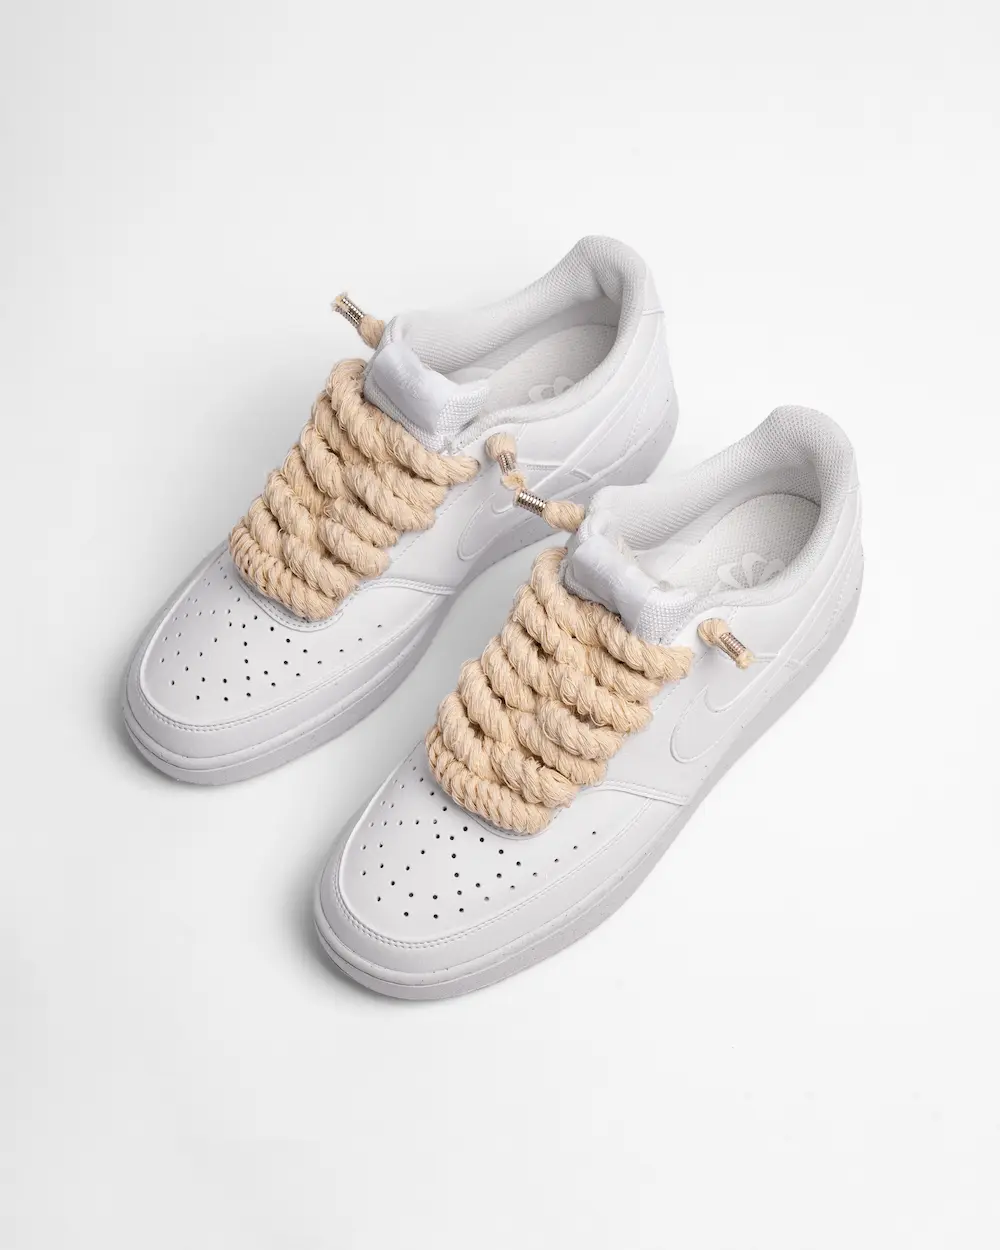 Nike Court Vision personalizzata con lacci in corda beige